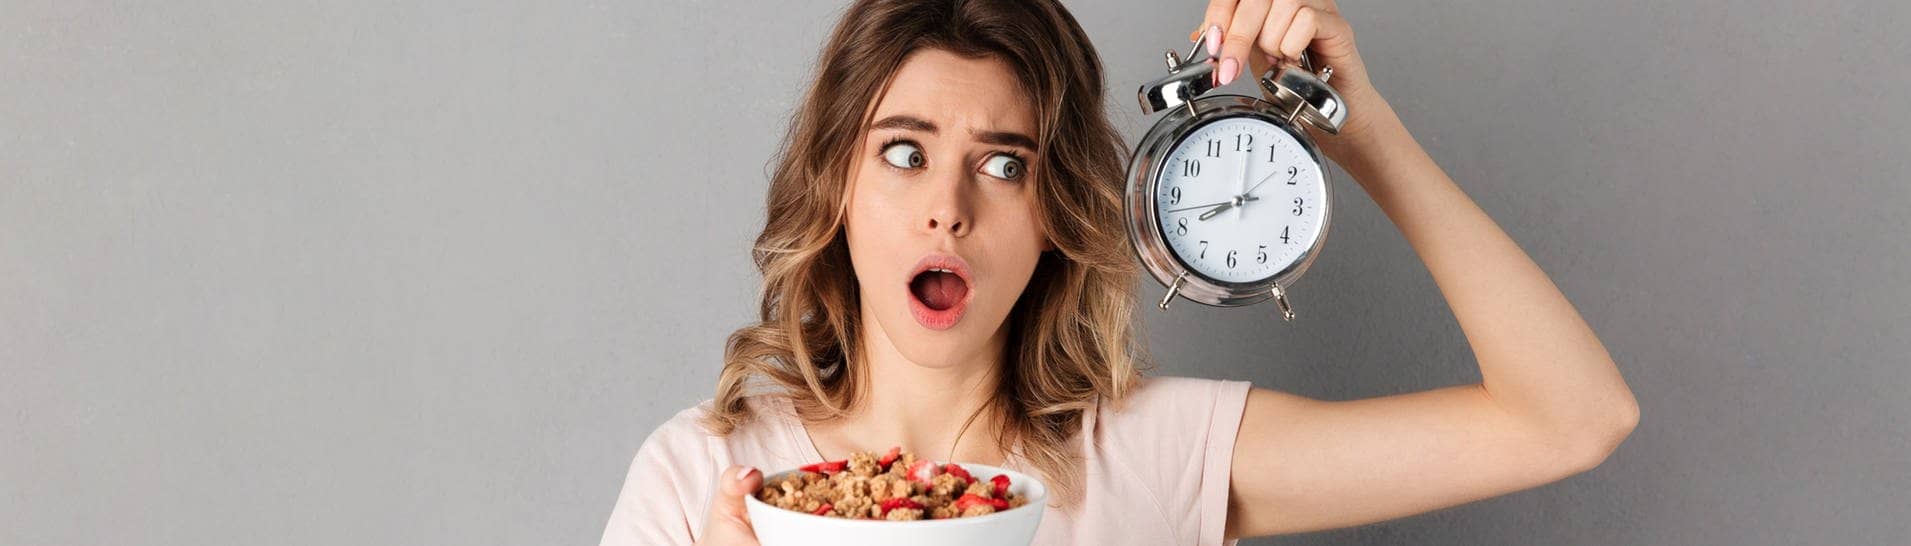 Eine Frau hat eine Uhr in der Hand, damit sie weiß, wann sie essen darf, da sie Intervallfasten macht, um abzunehmen. Wie klären, ob Intervallfasten eine gute Alternative zur klassischen Diät sein kann. (Foto: IMAGO, Pond5 Images)